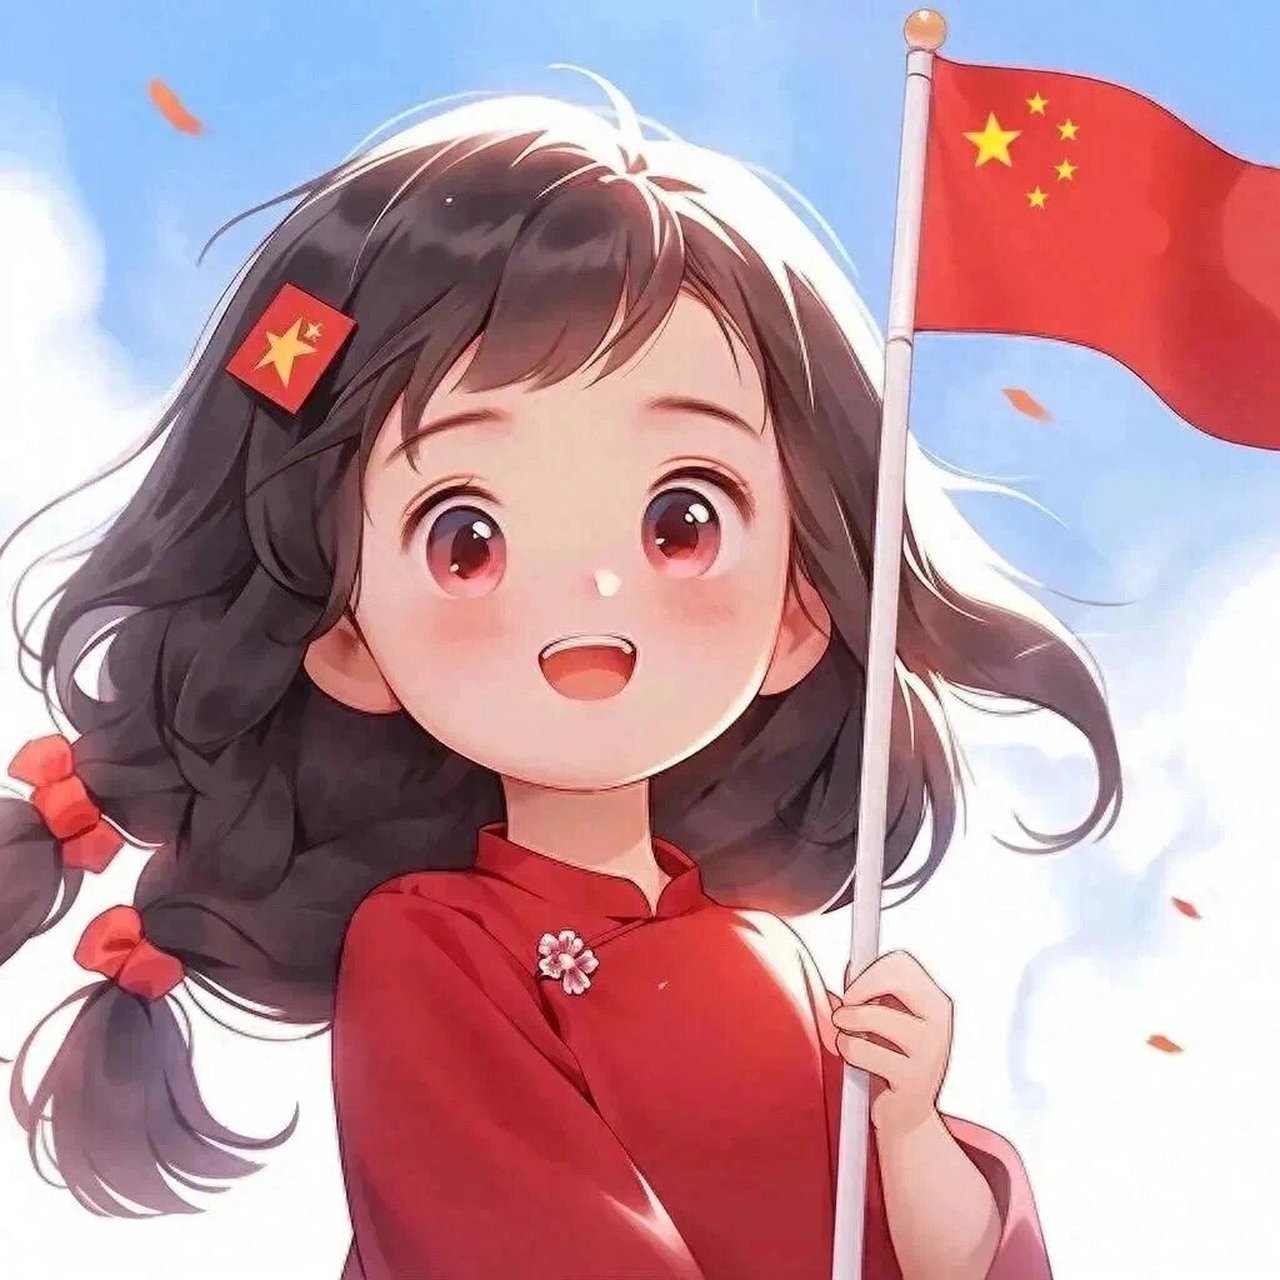 12 张国庆节头像,永远的中国红 我和我的祖国,一刻也不能分割